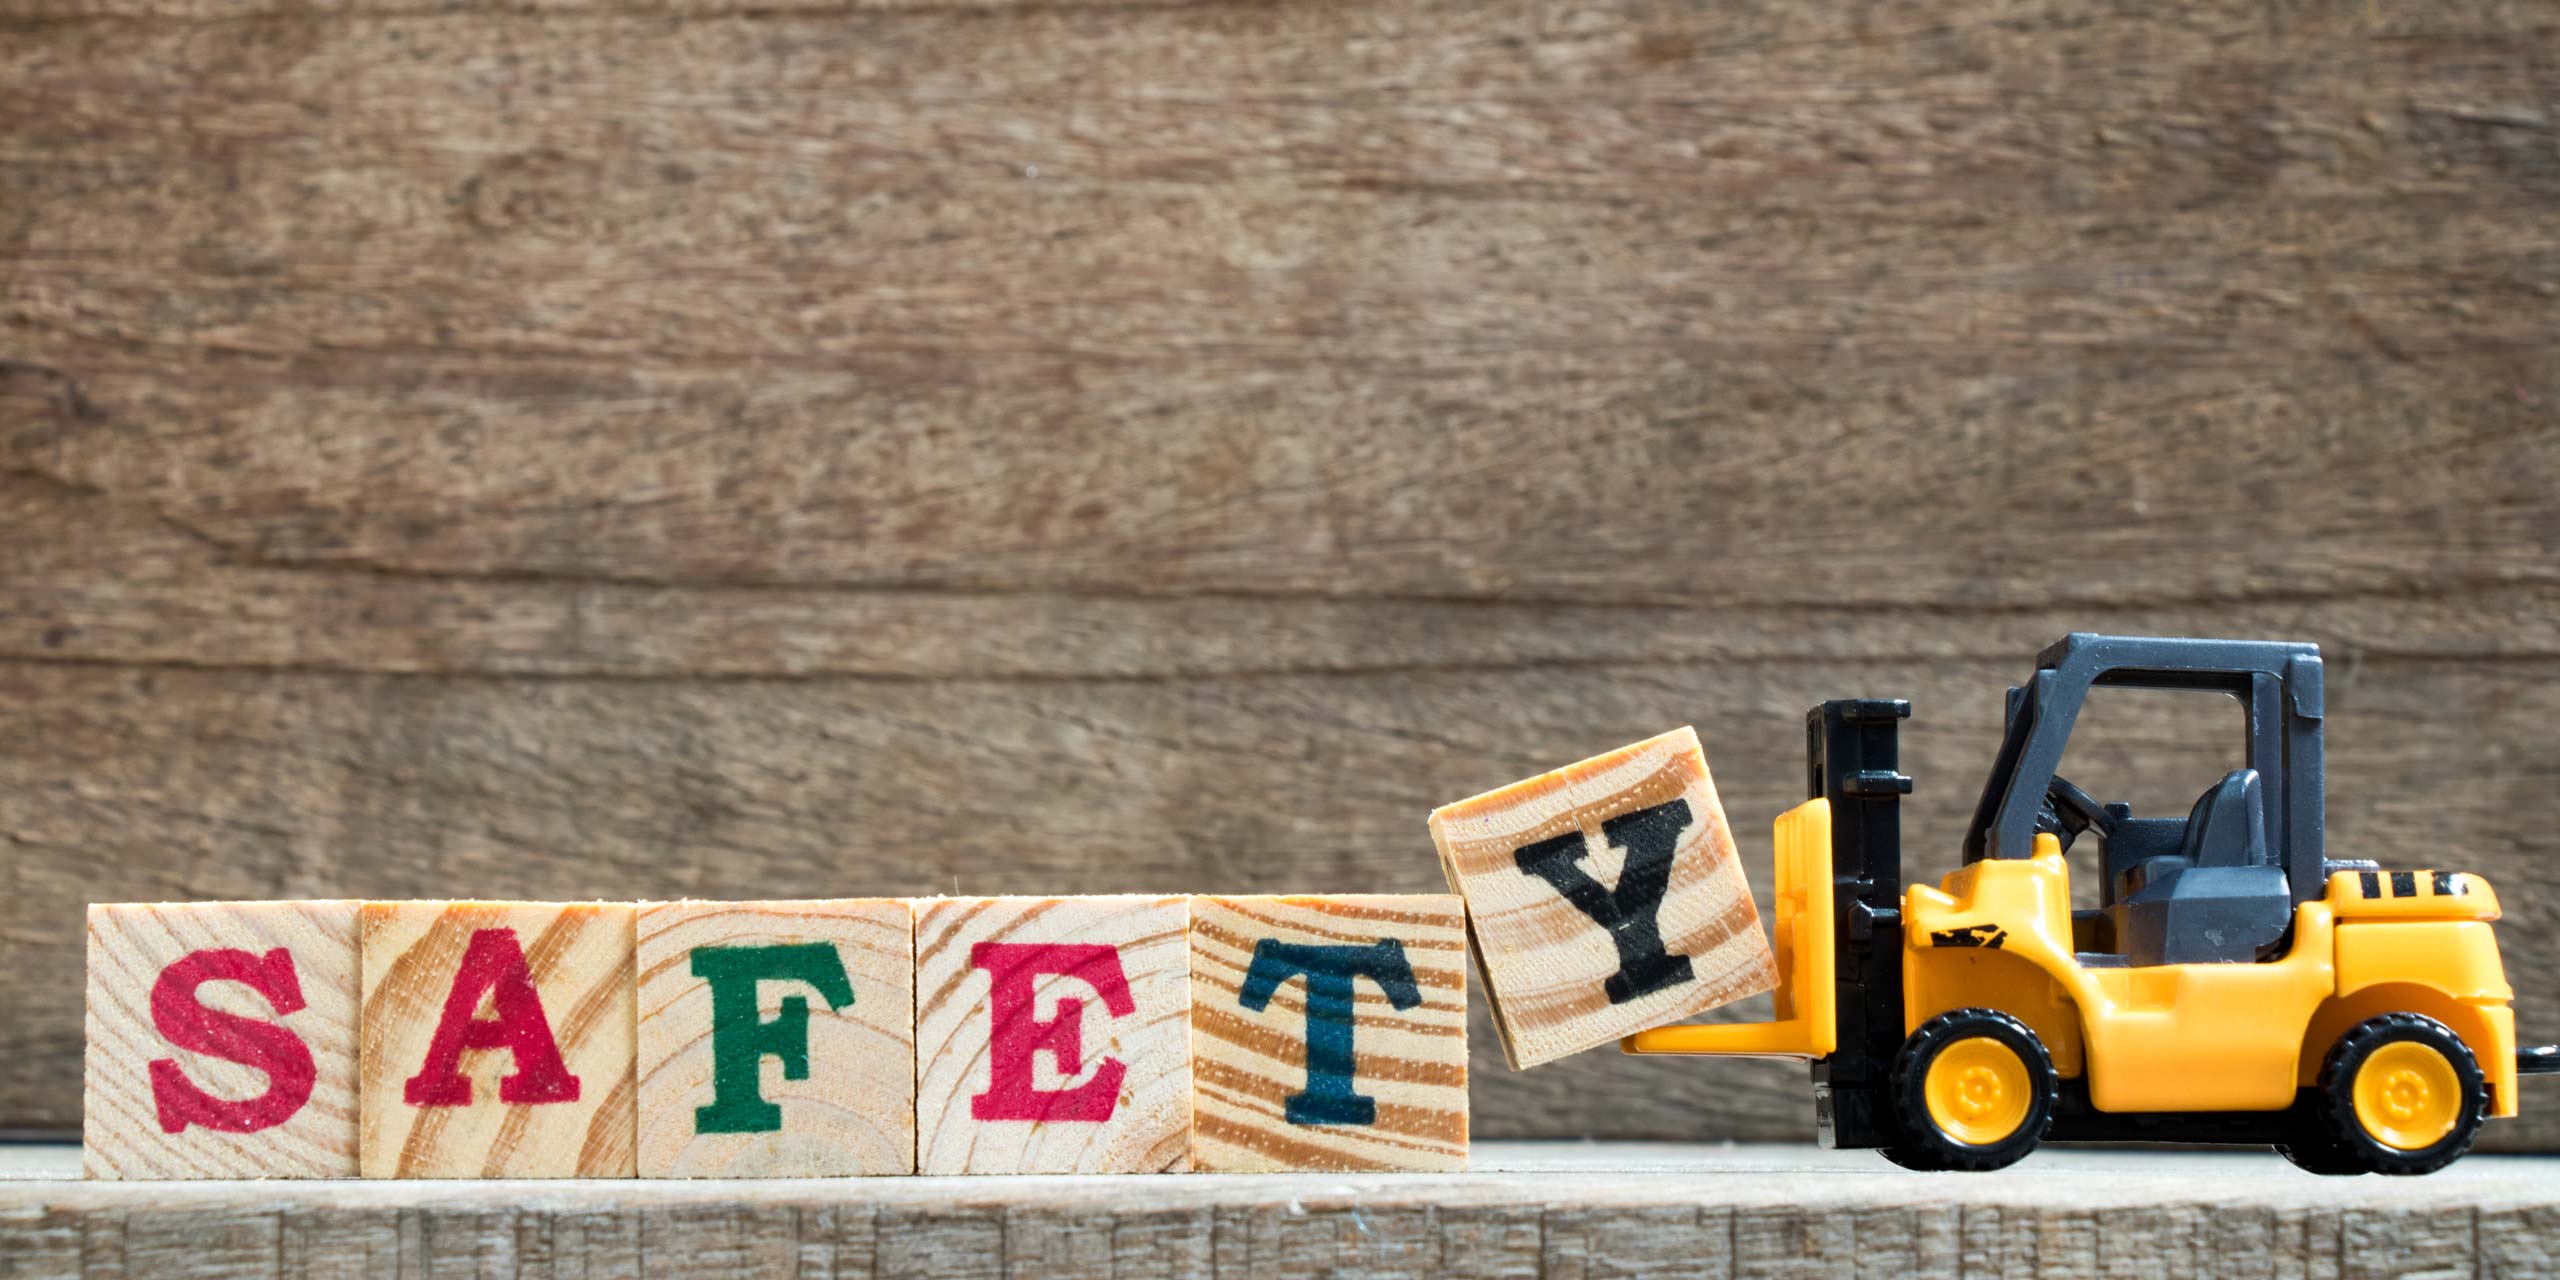 Spielzeuggabelstapler der das englische Wort Safefy, also Sicherheit, mit bedruckten Holzwürfeln zusammenstellt.